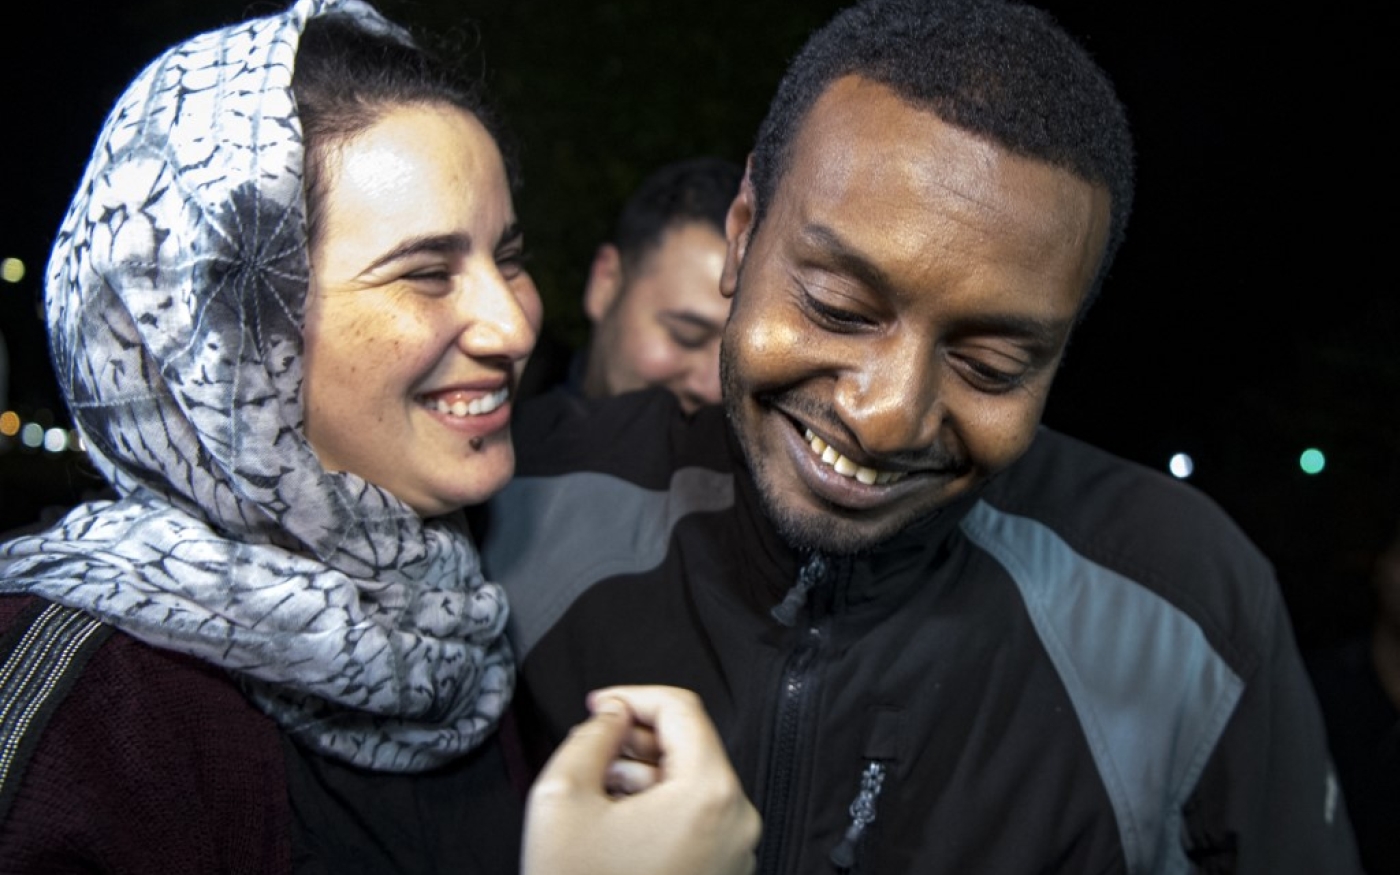 La journaliste Hajar Raissouni est accueillie par son petit ami à sa sortie de prison, le 16 octobre 2019 (AFP)